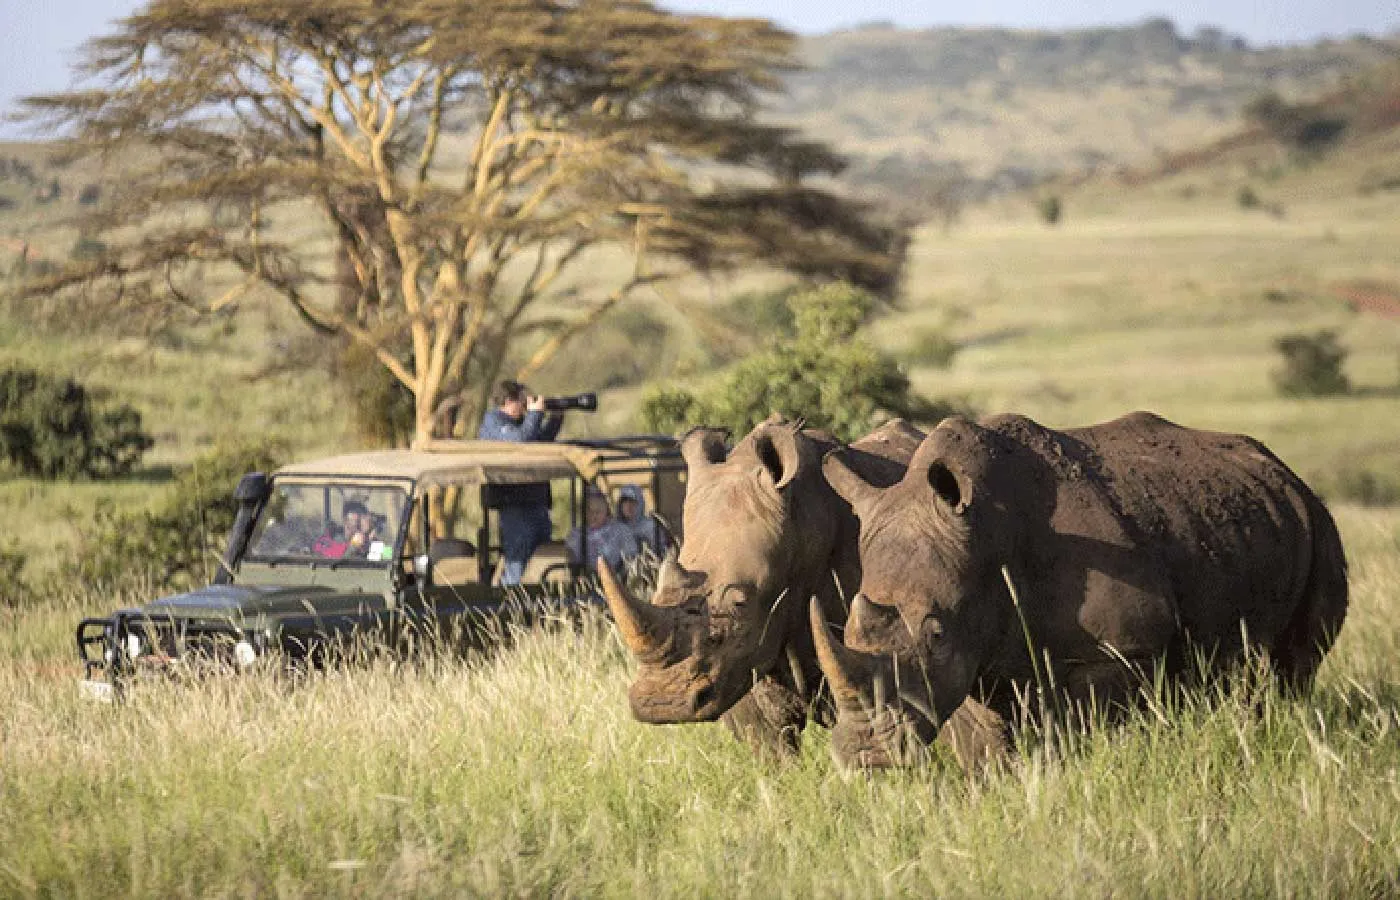 Rhinos during Kenya safaris from india.